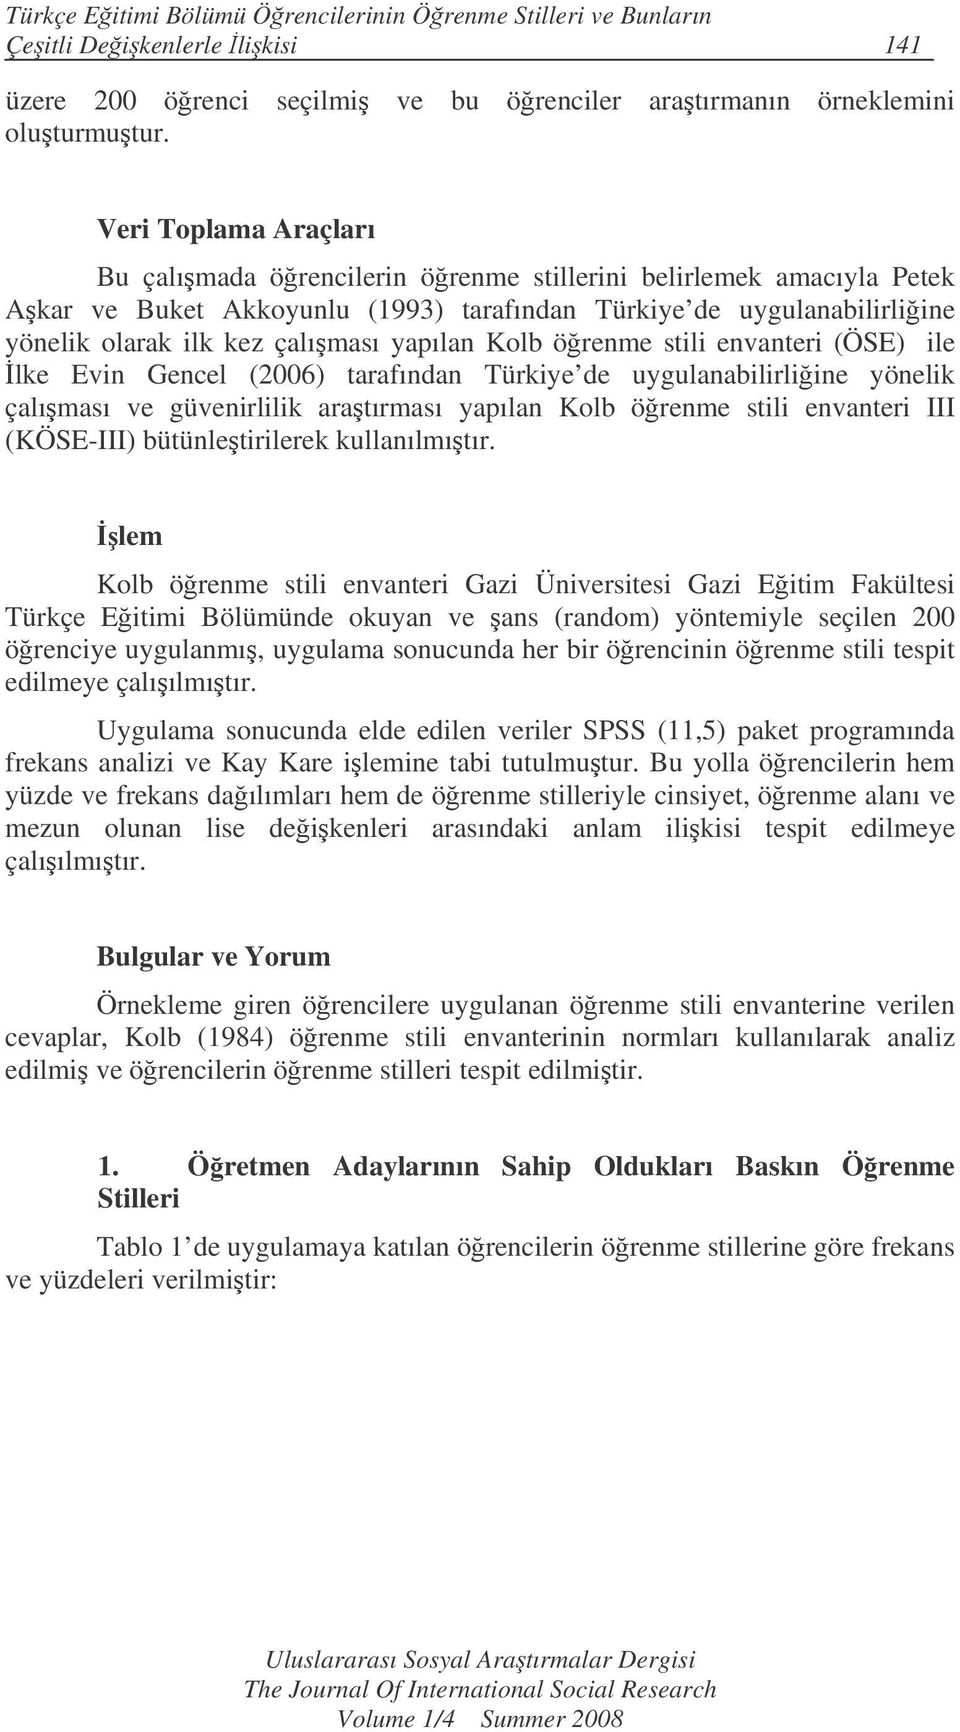 yapılan Kolb örenme stili envanteri (ÖSE) ile lke Evin Gencel (2006) tarafından Türkiye de uygulanabilirliine yönelik çalıması ve güvenirlilik aratırması yapılan Kolb örenme stili envanteri III